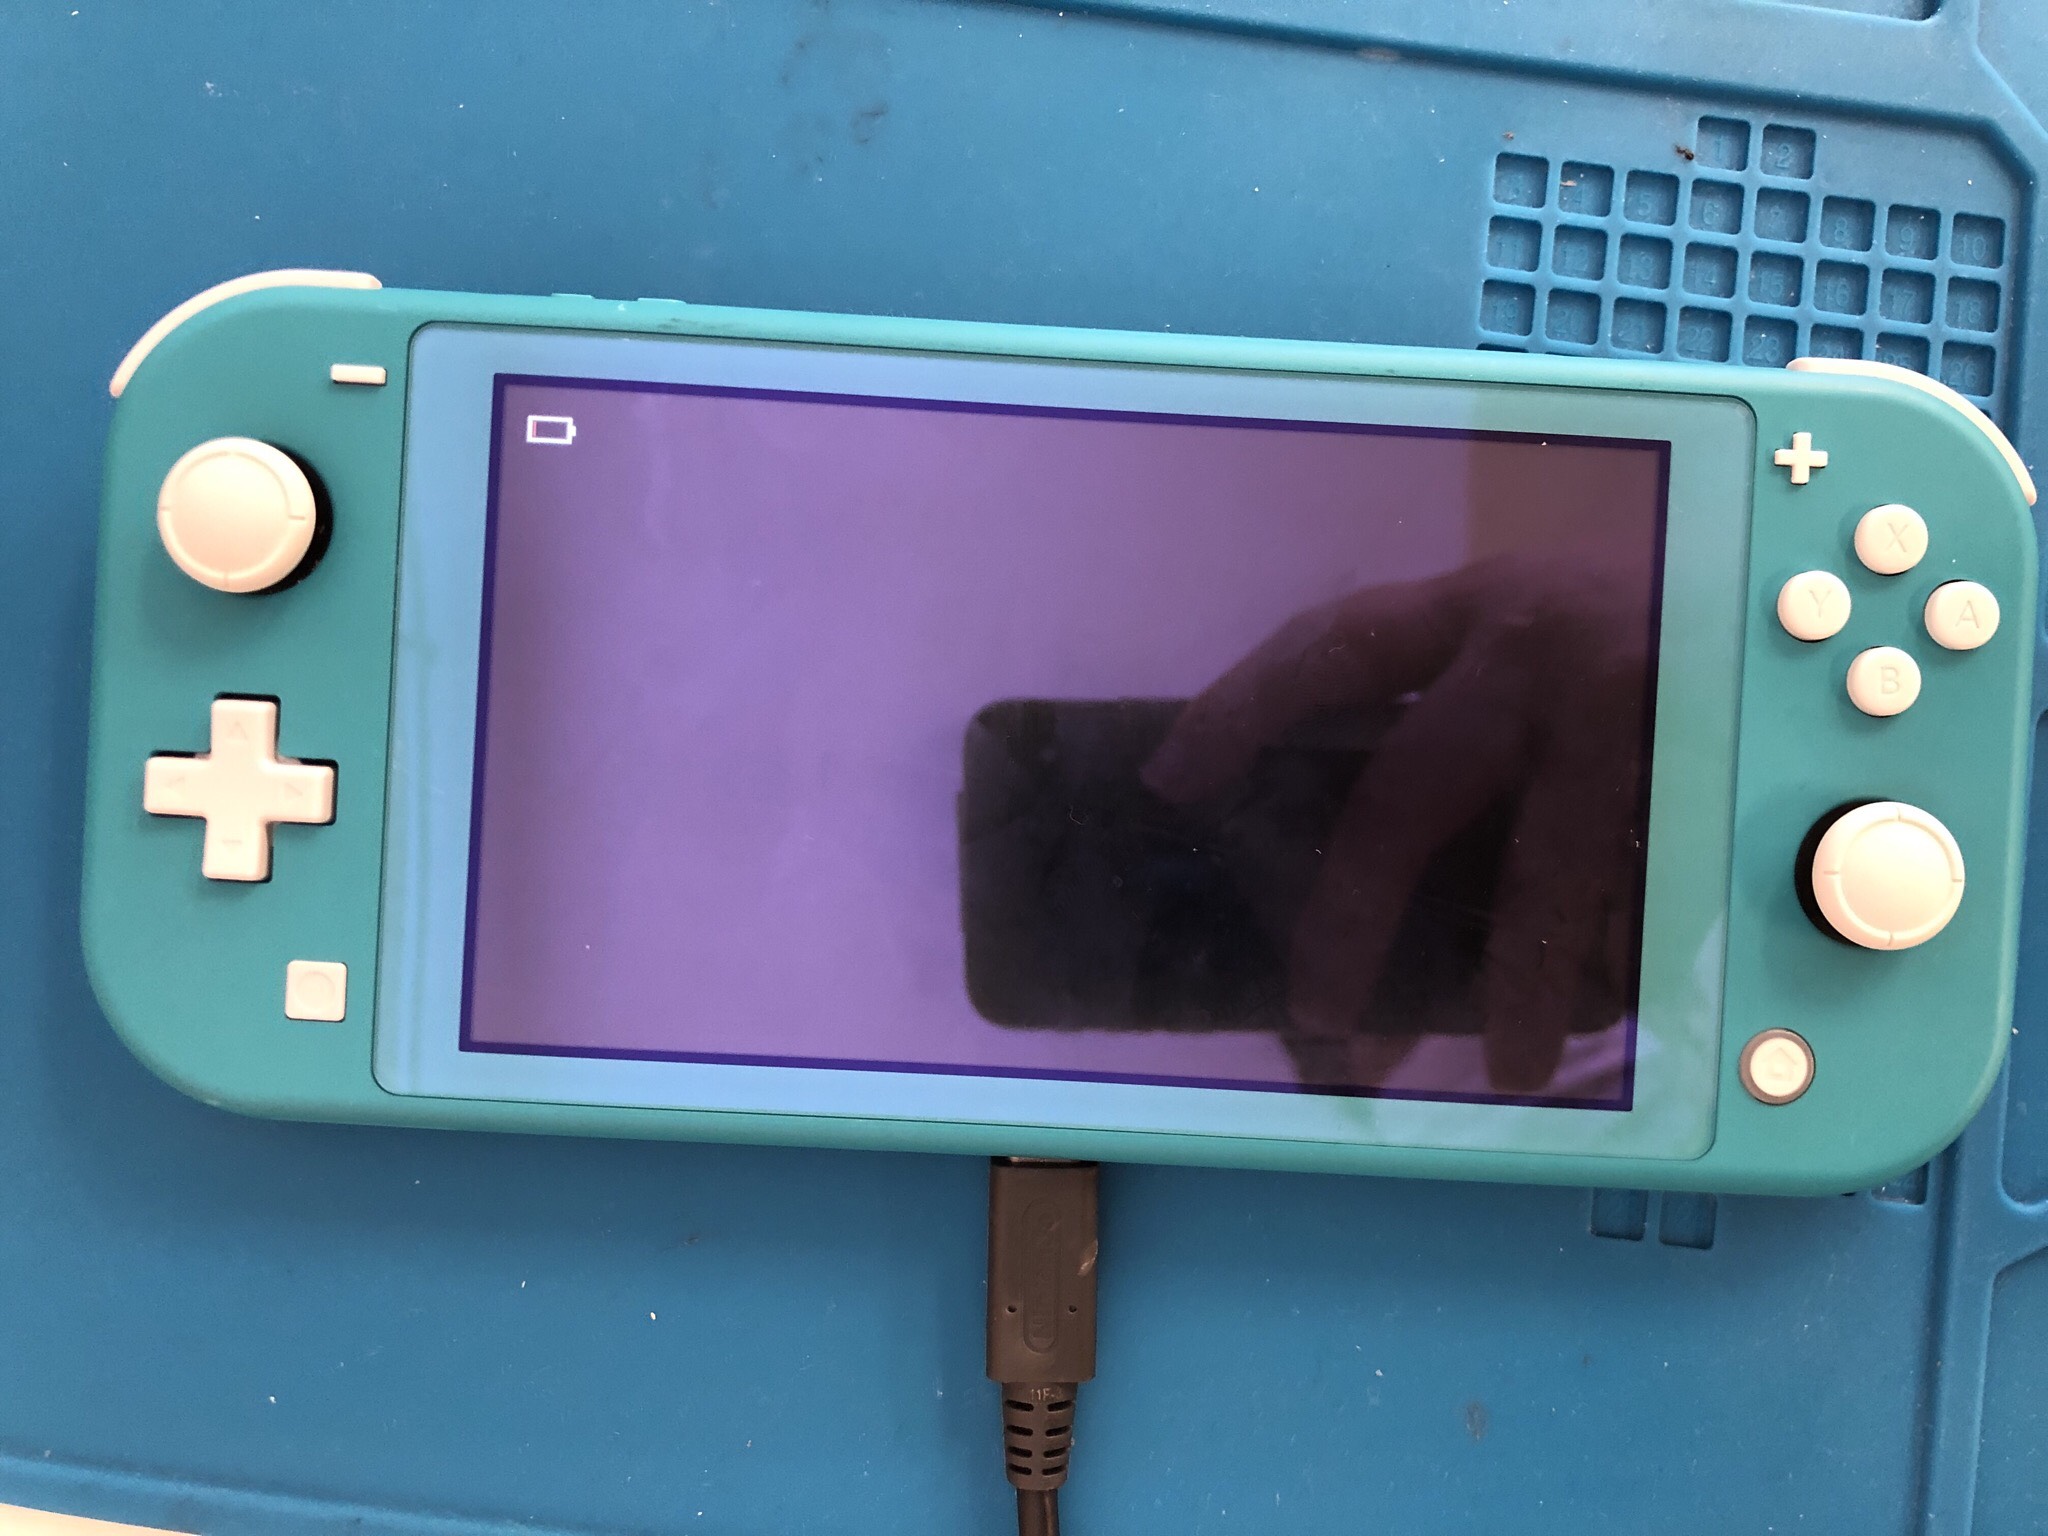 任天堂スイッチライト 充電口 が破損し充電できずゲームで遊べなくなっちゃった Nintendo3ds Switch Psp 修理のゲームホスピタル Nintendo3ds ニンテンドーds Psp Switch 修理